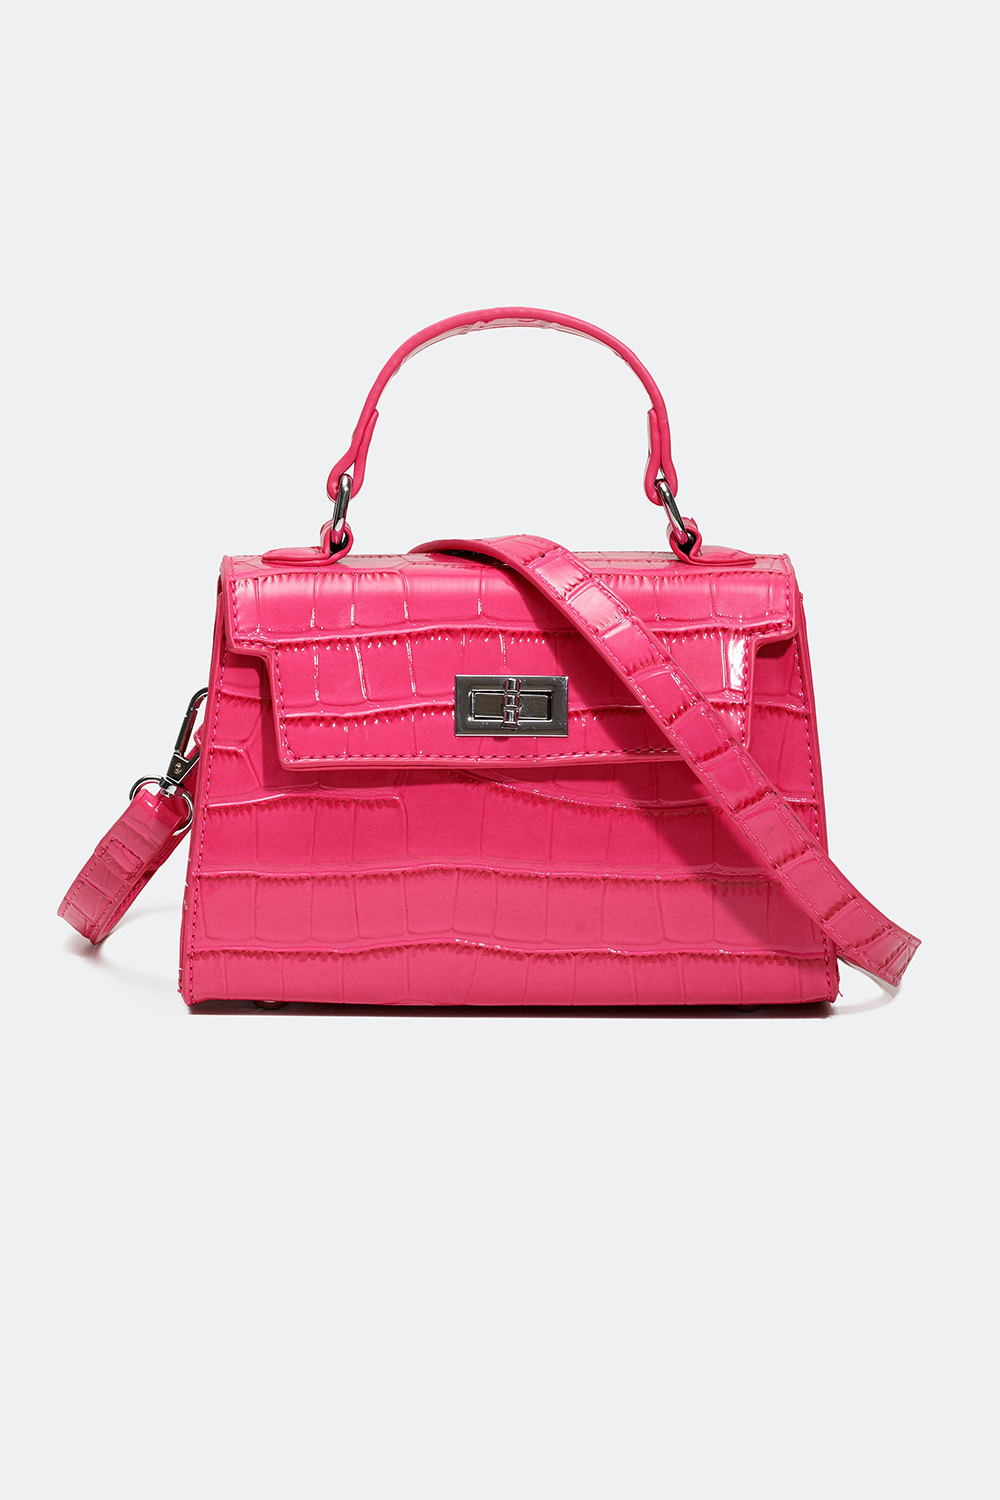 Lille lyserød håndtaske med krokodillemønster